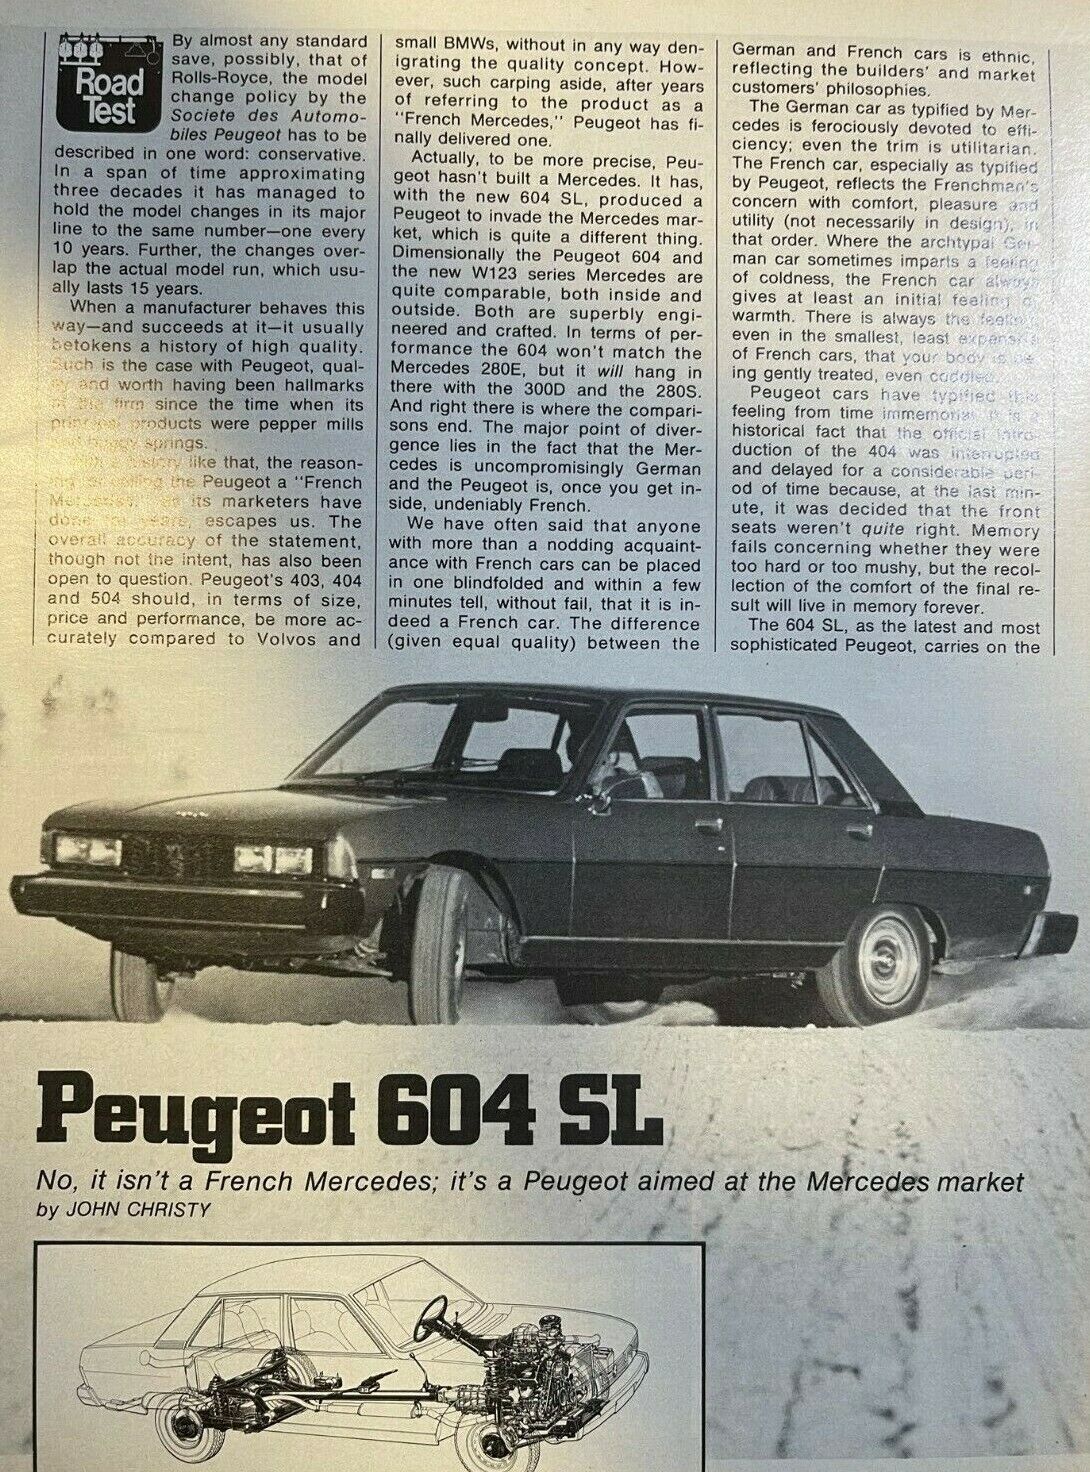  Road Test 1977 Peugeot 604 SL illustrated